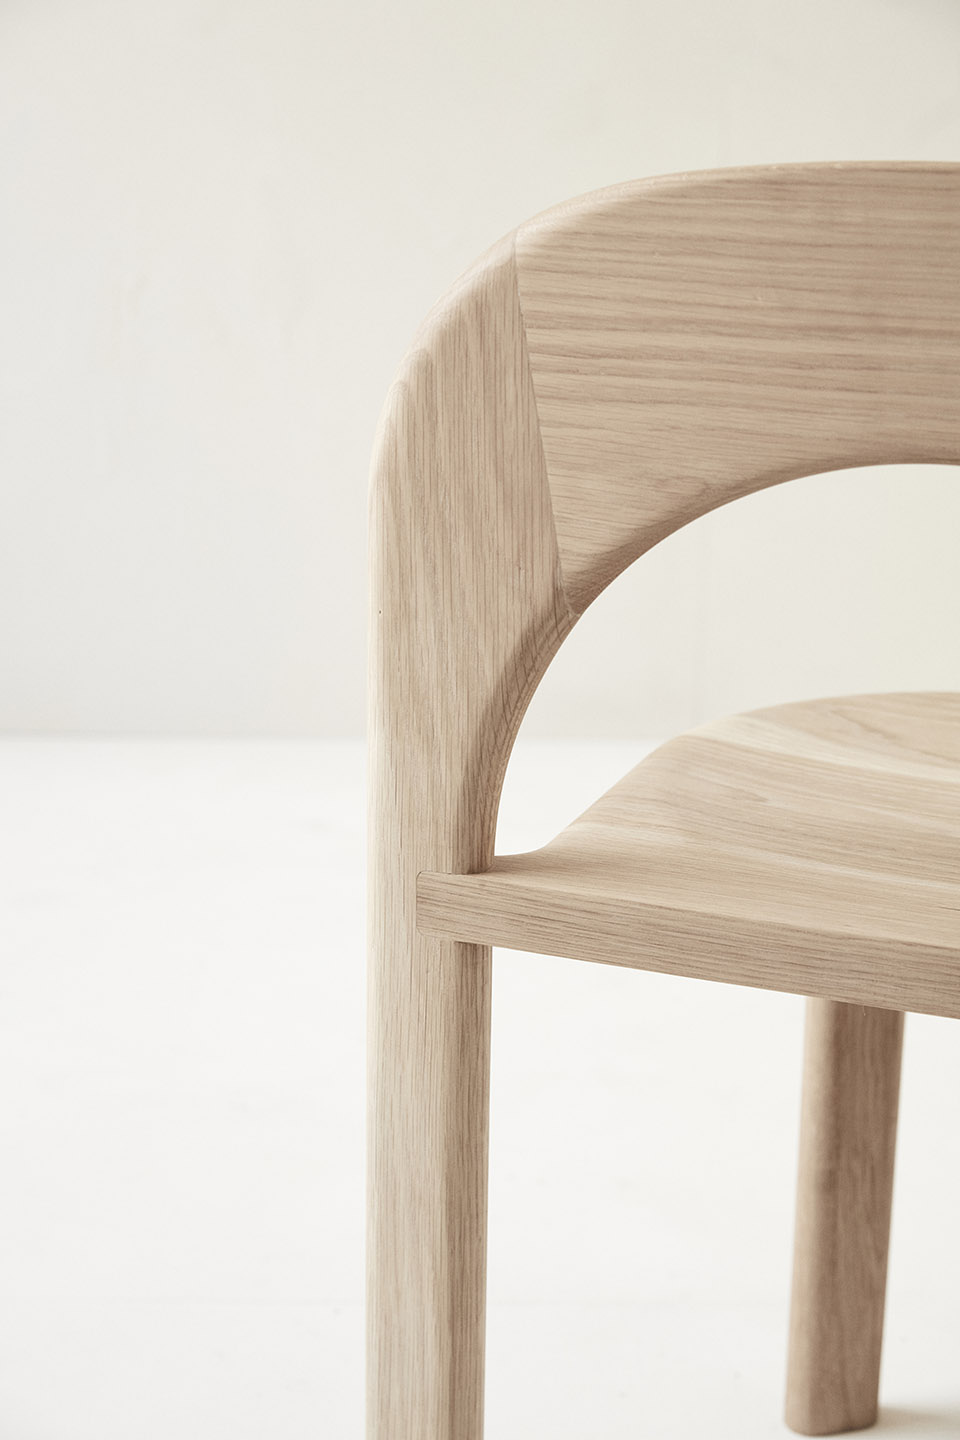 Odie椅子，墨尔本/艺术元素和工程技术的集合-10